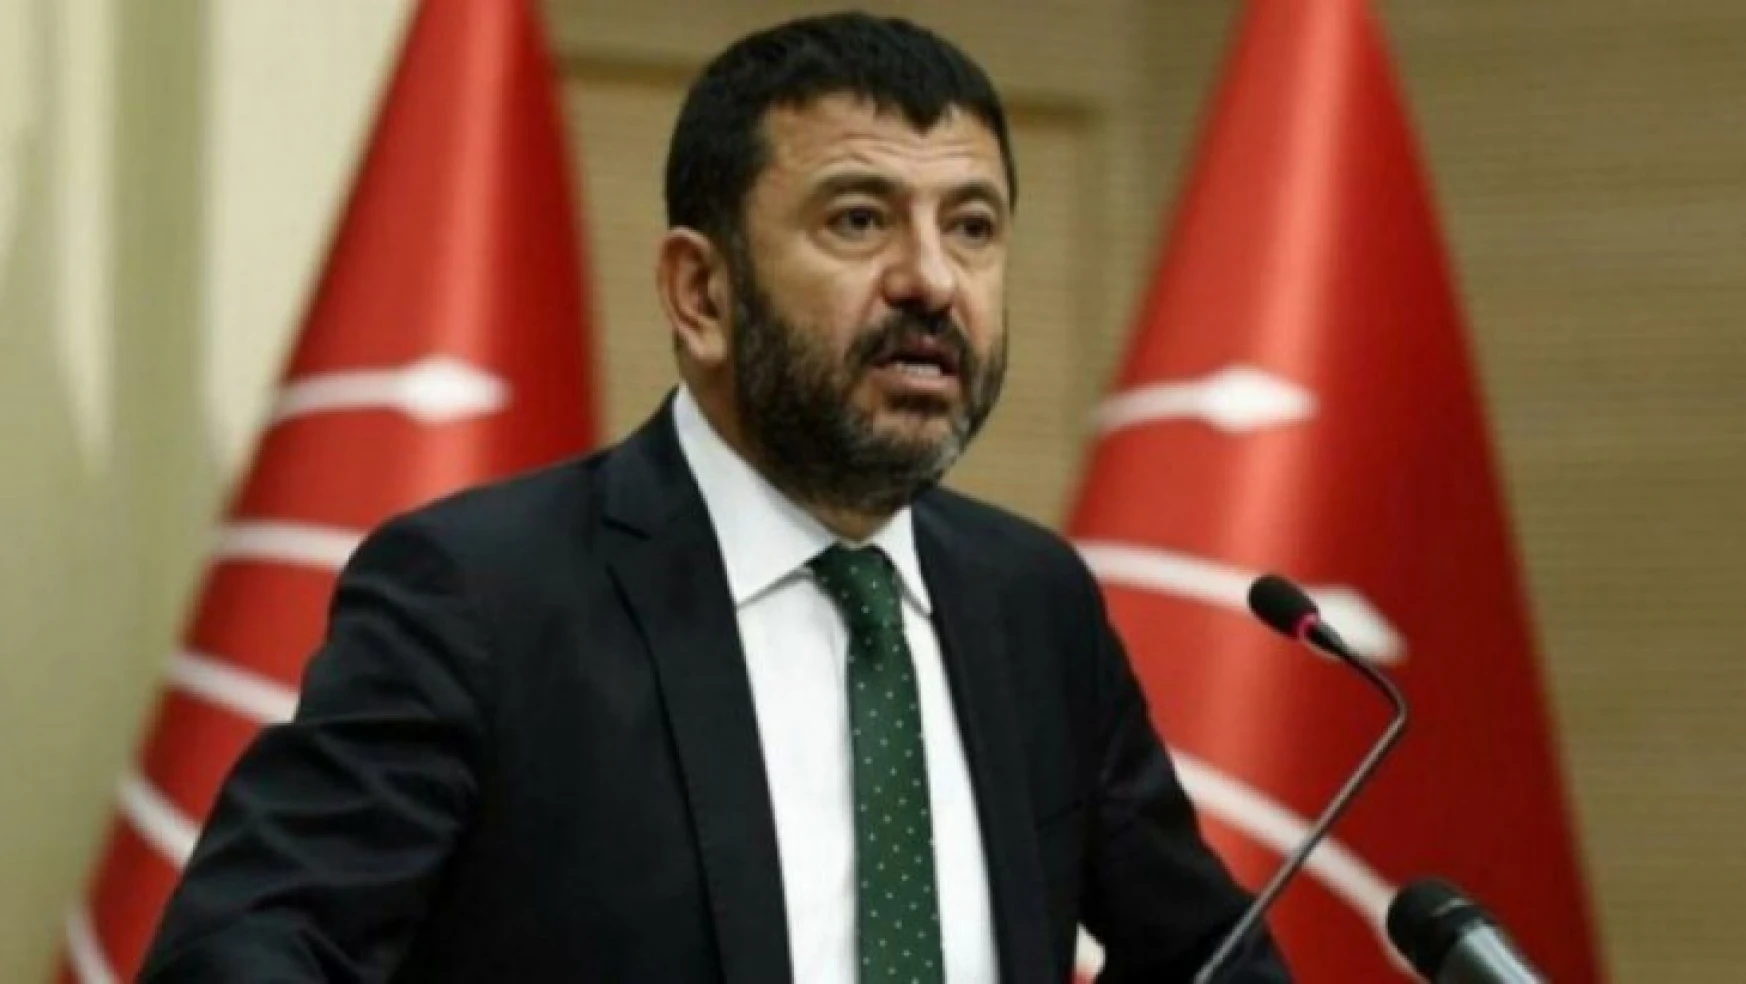 Ağbaba, İçişleri Bakanı Soylu'ya son dönemde artan polis intiharlarını sordu.